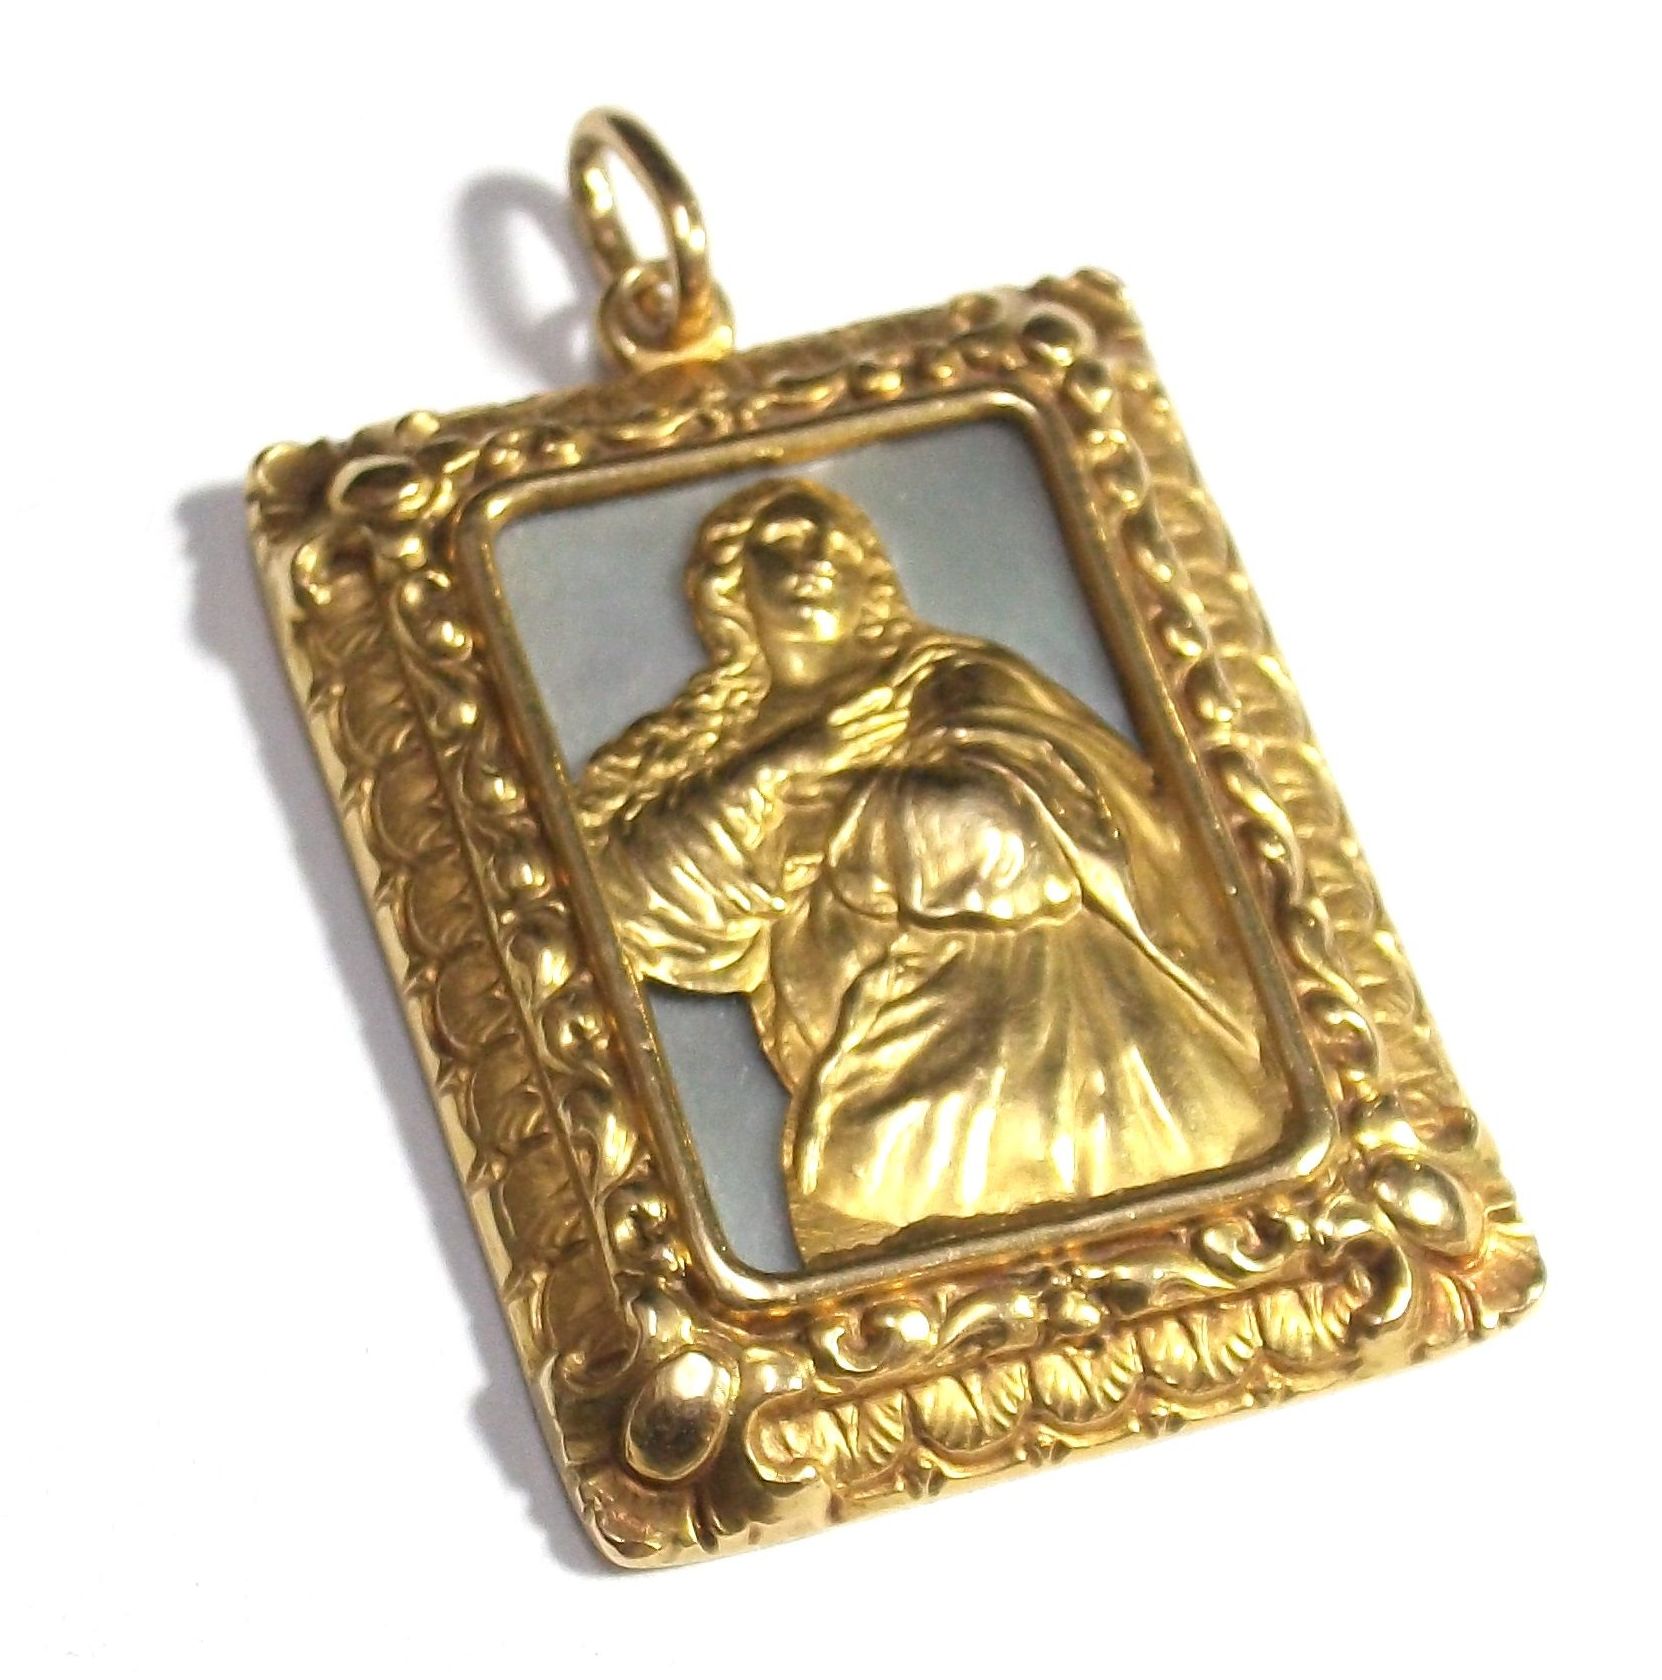 Medalla rectangular con la imagen de la Inmaculada Concepción, realizada en oro de 18k con base de nácar.